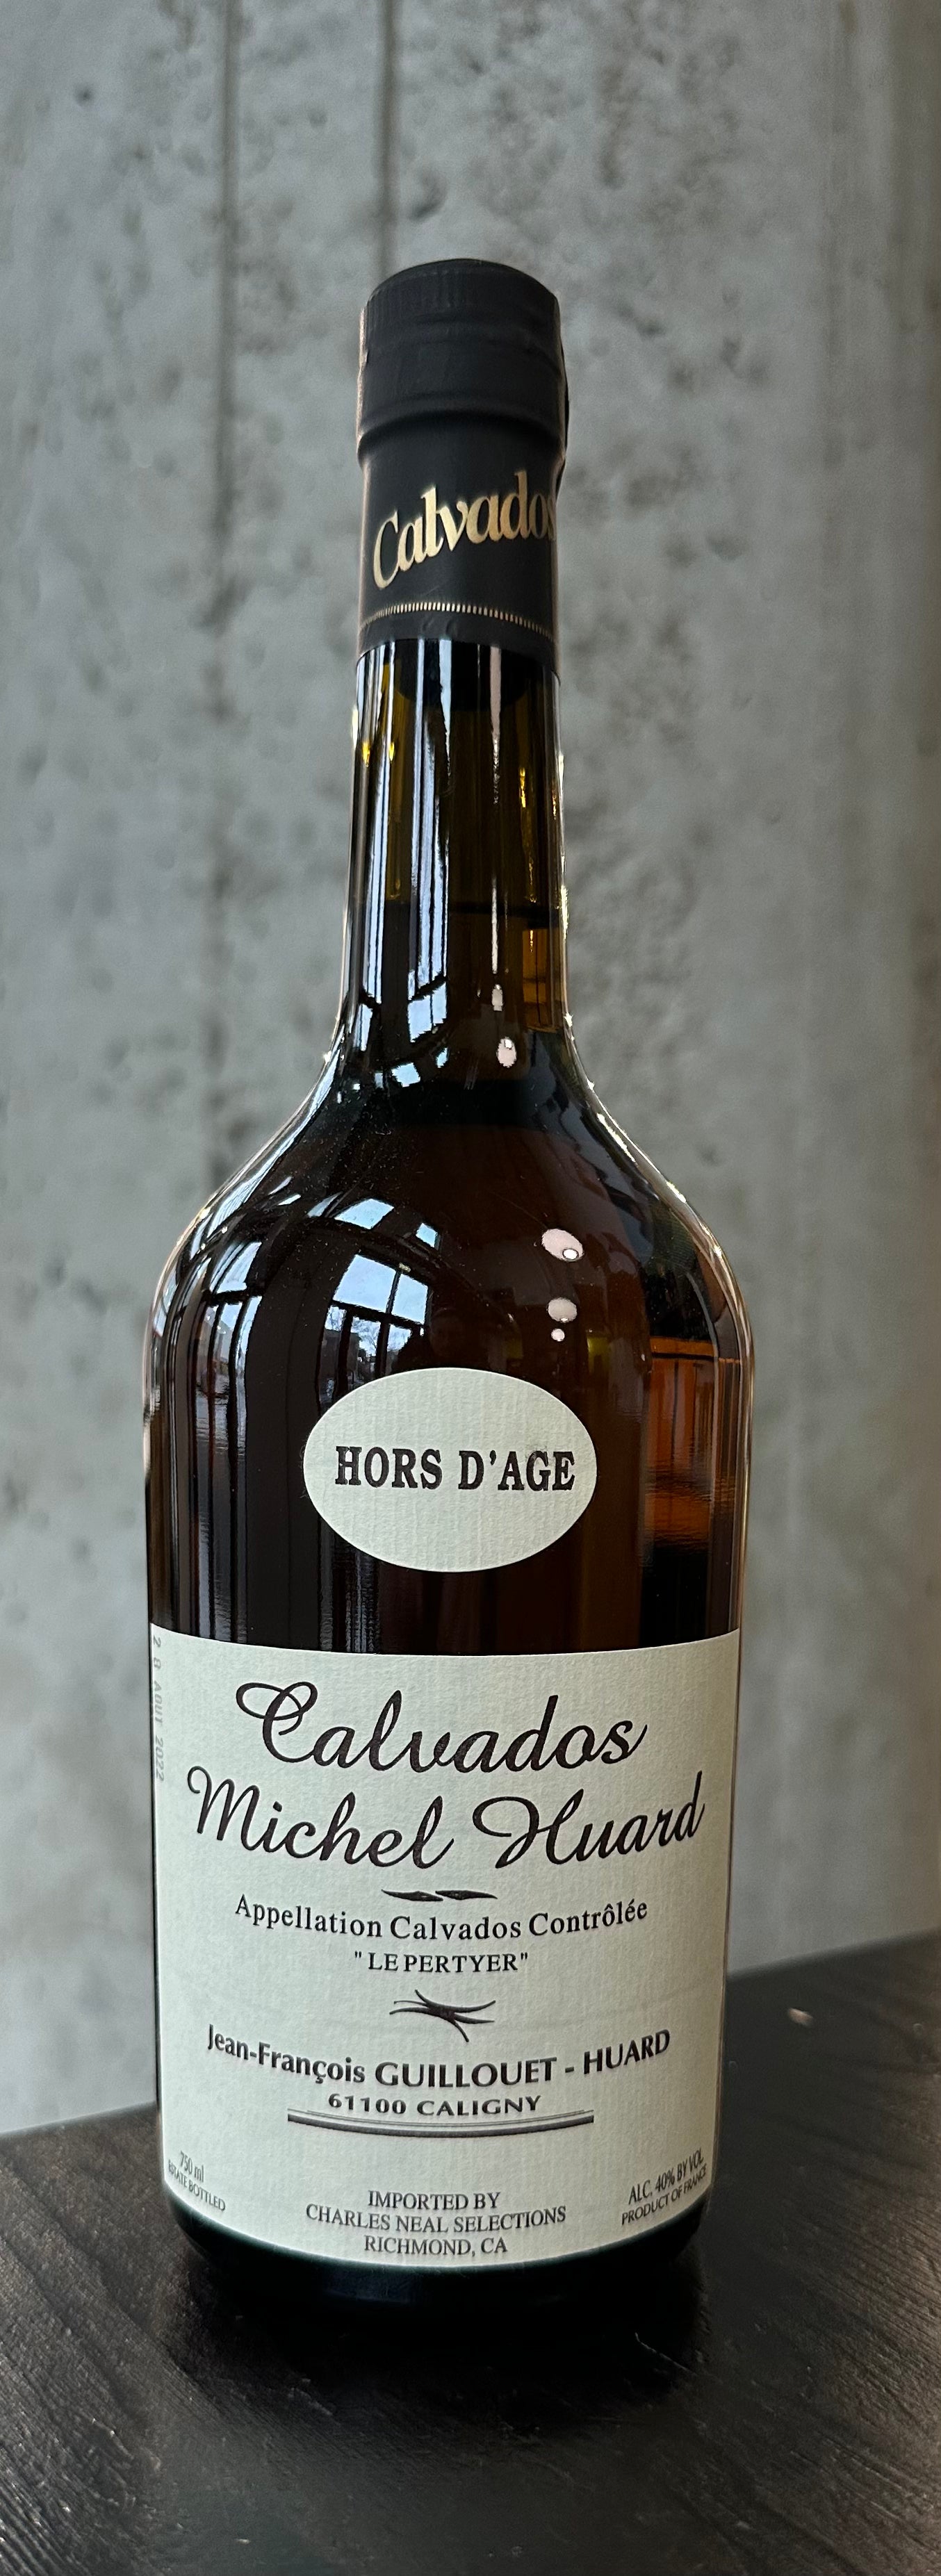 Michel Huard "Hors d'Age" Calvados